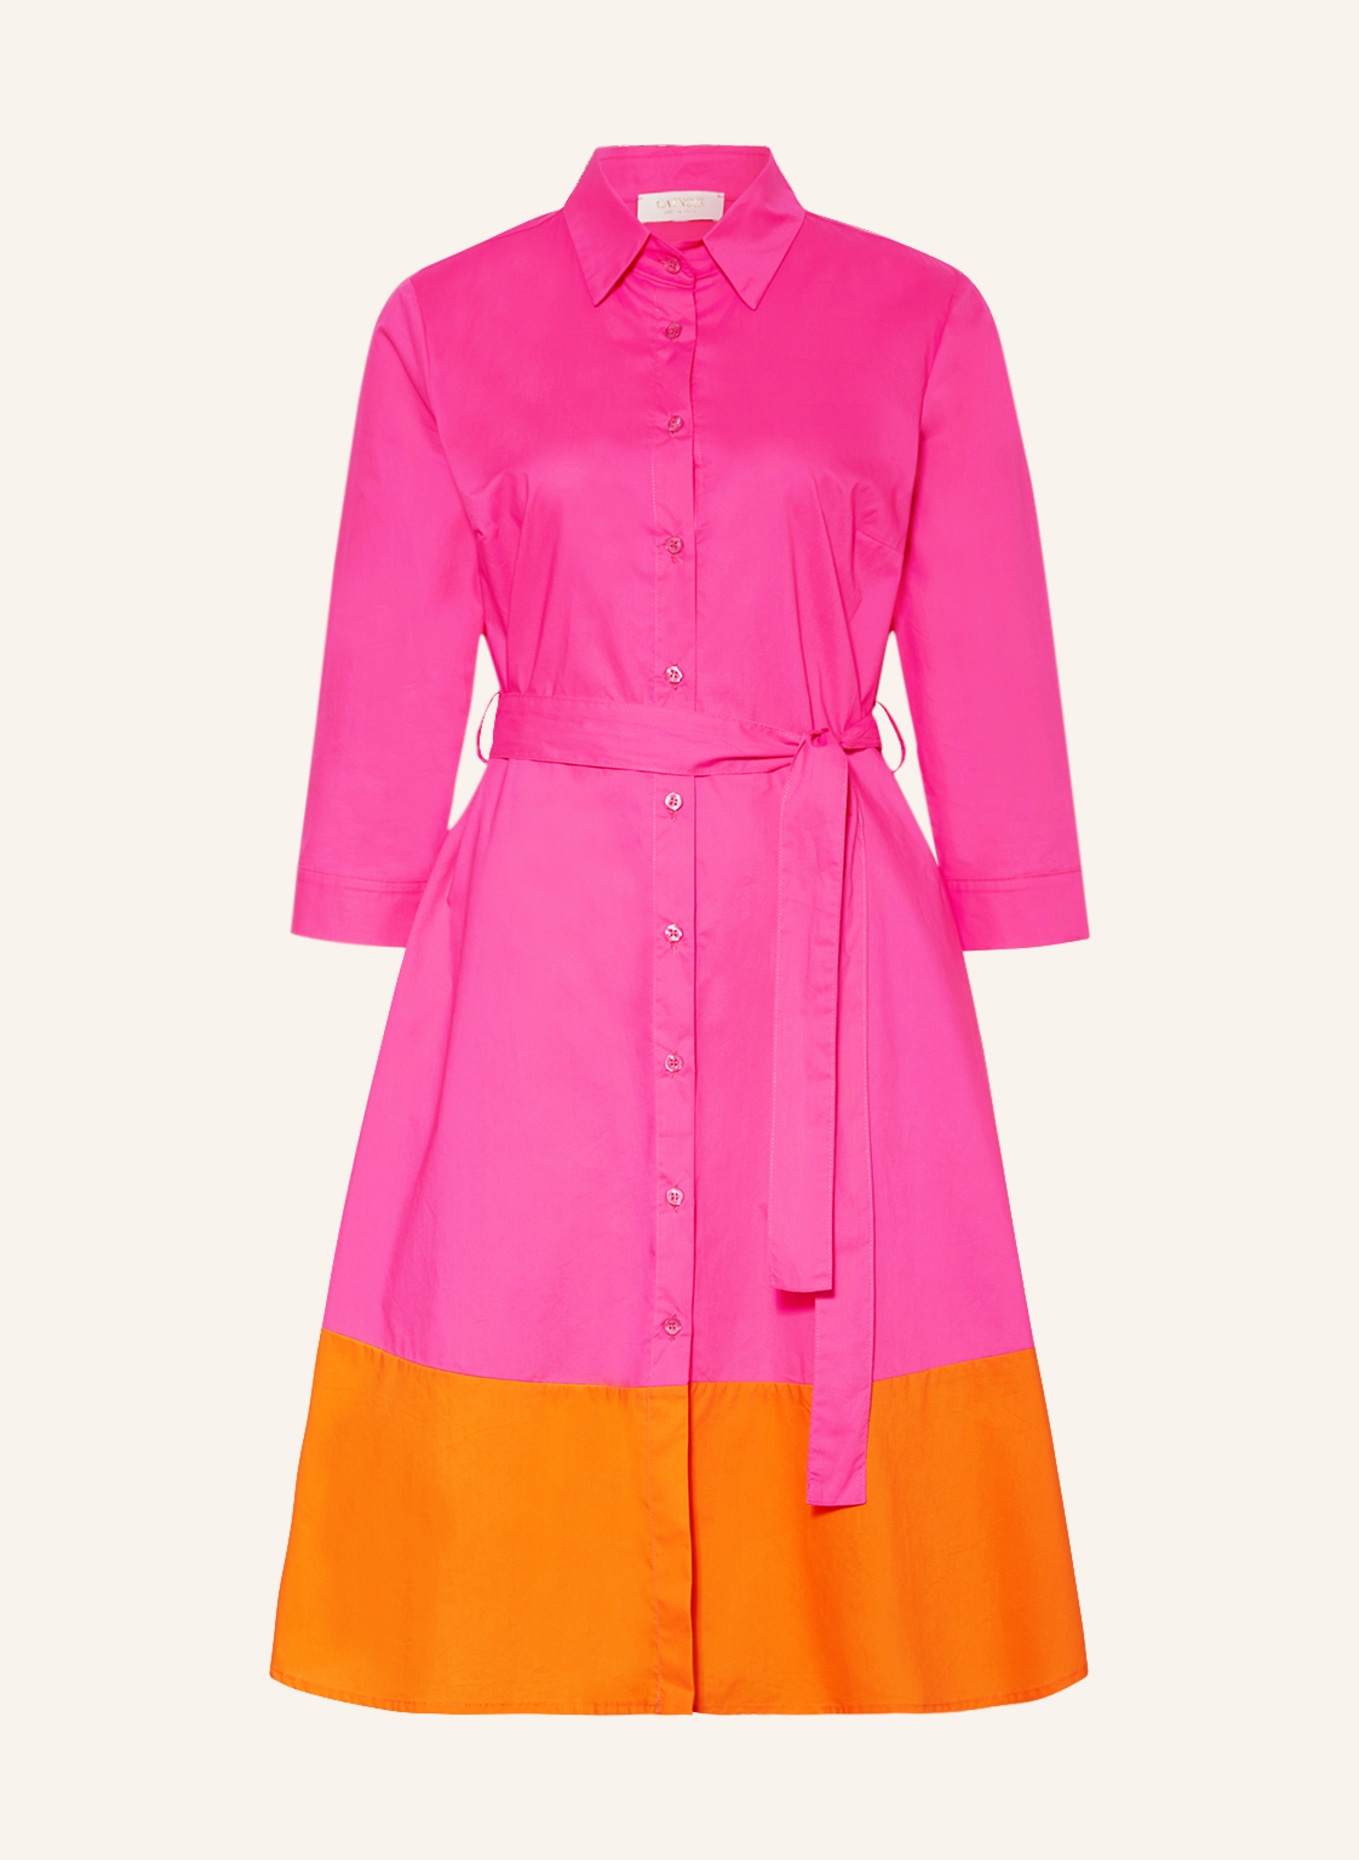 CATNOIR Hemdblusenkleid mit 3/4-Arm, Farbe: PINK/ ORANGE (Bild 1)